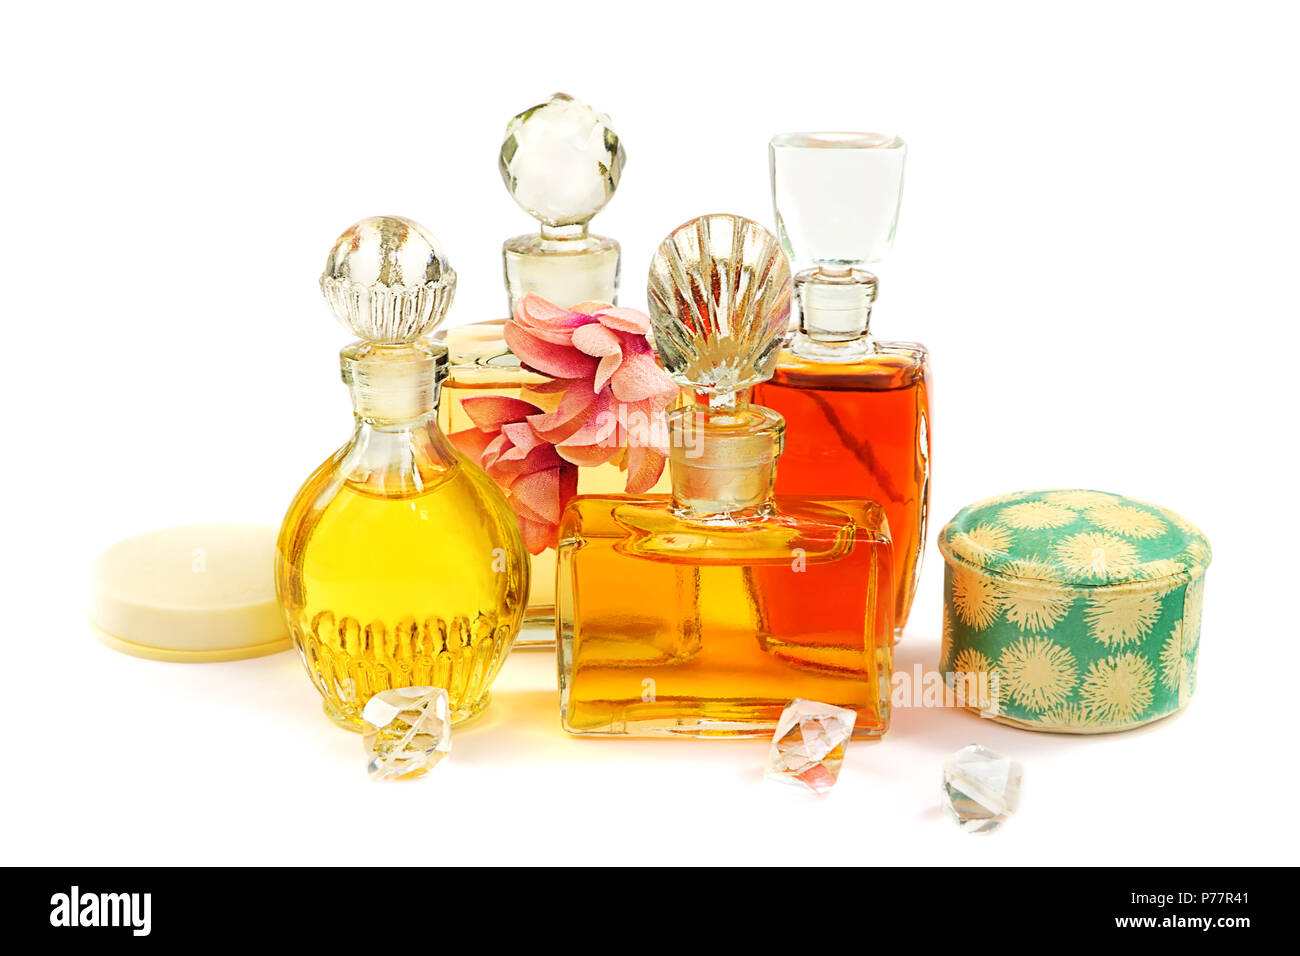 Fancy Perfume Bottle Images – Browse 2,109 Stock Photos, Vectors